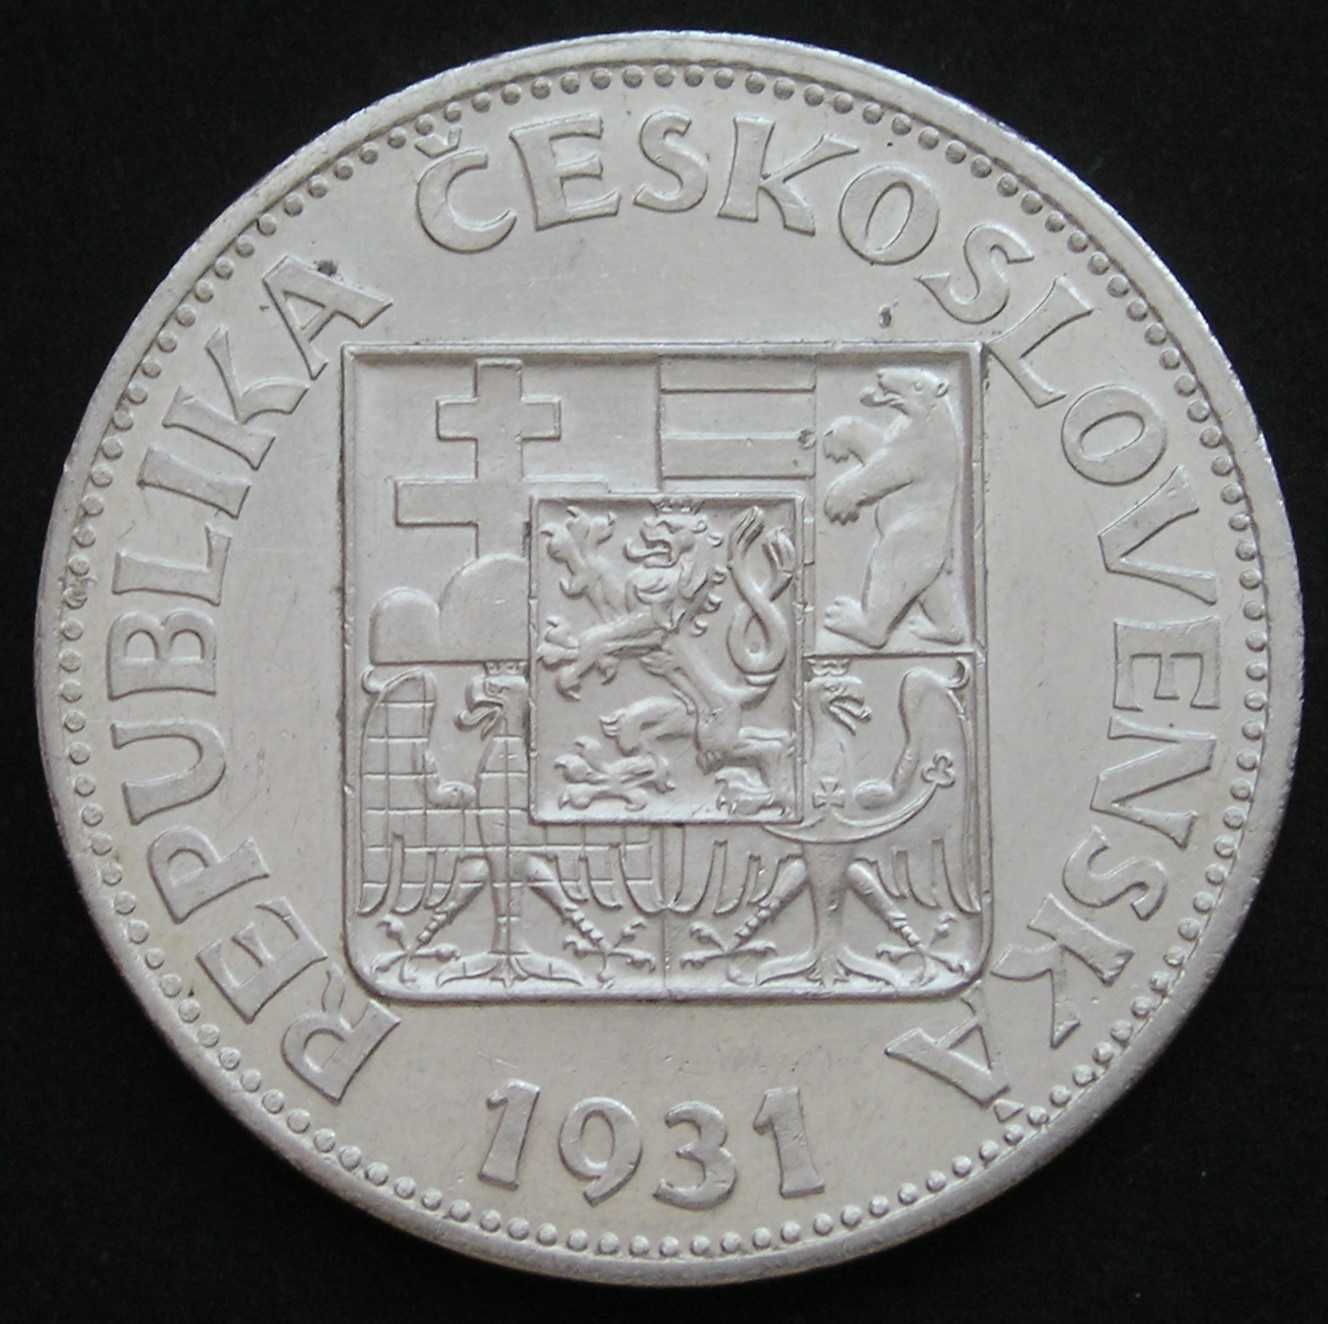 Czechosłowacja 10 koron 1931 - srebro - stan 2